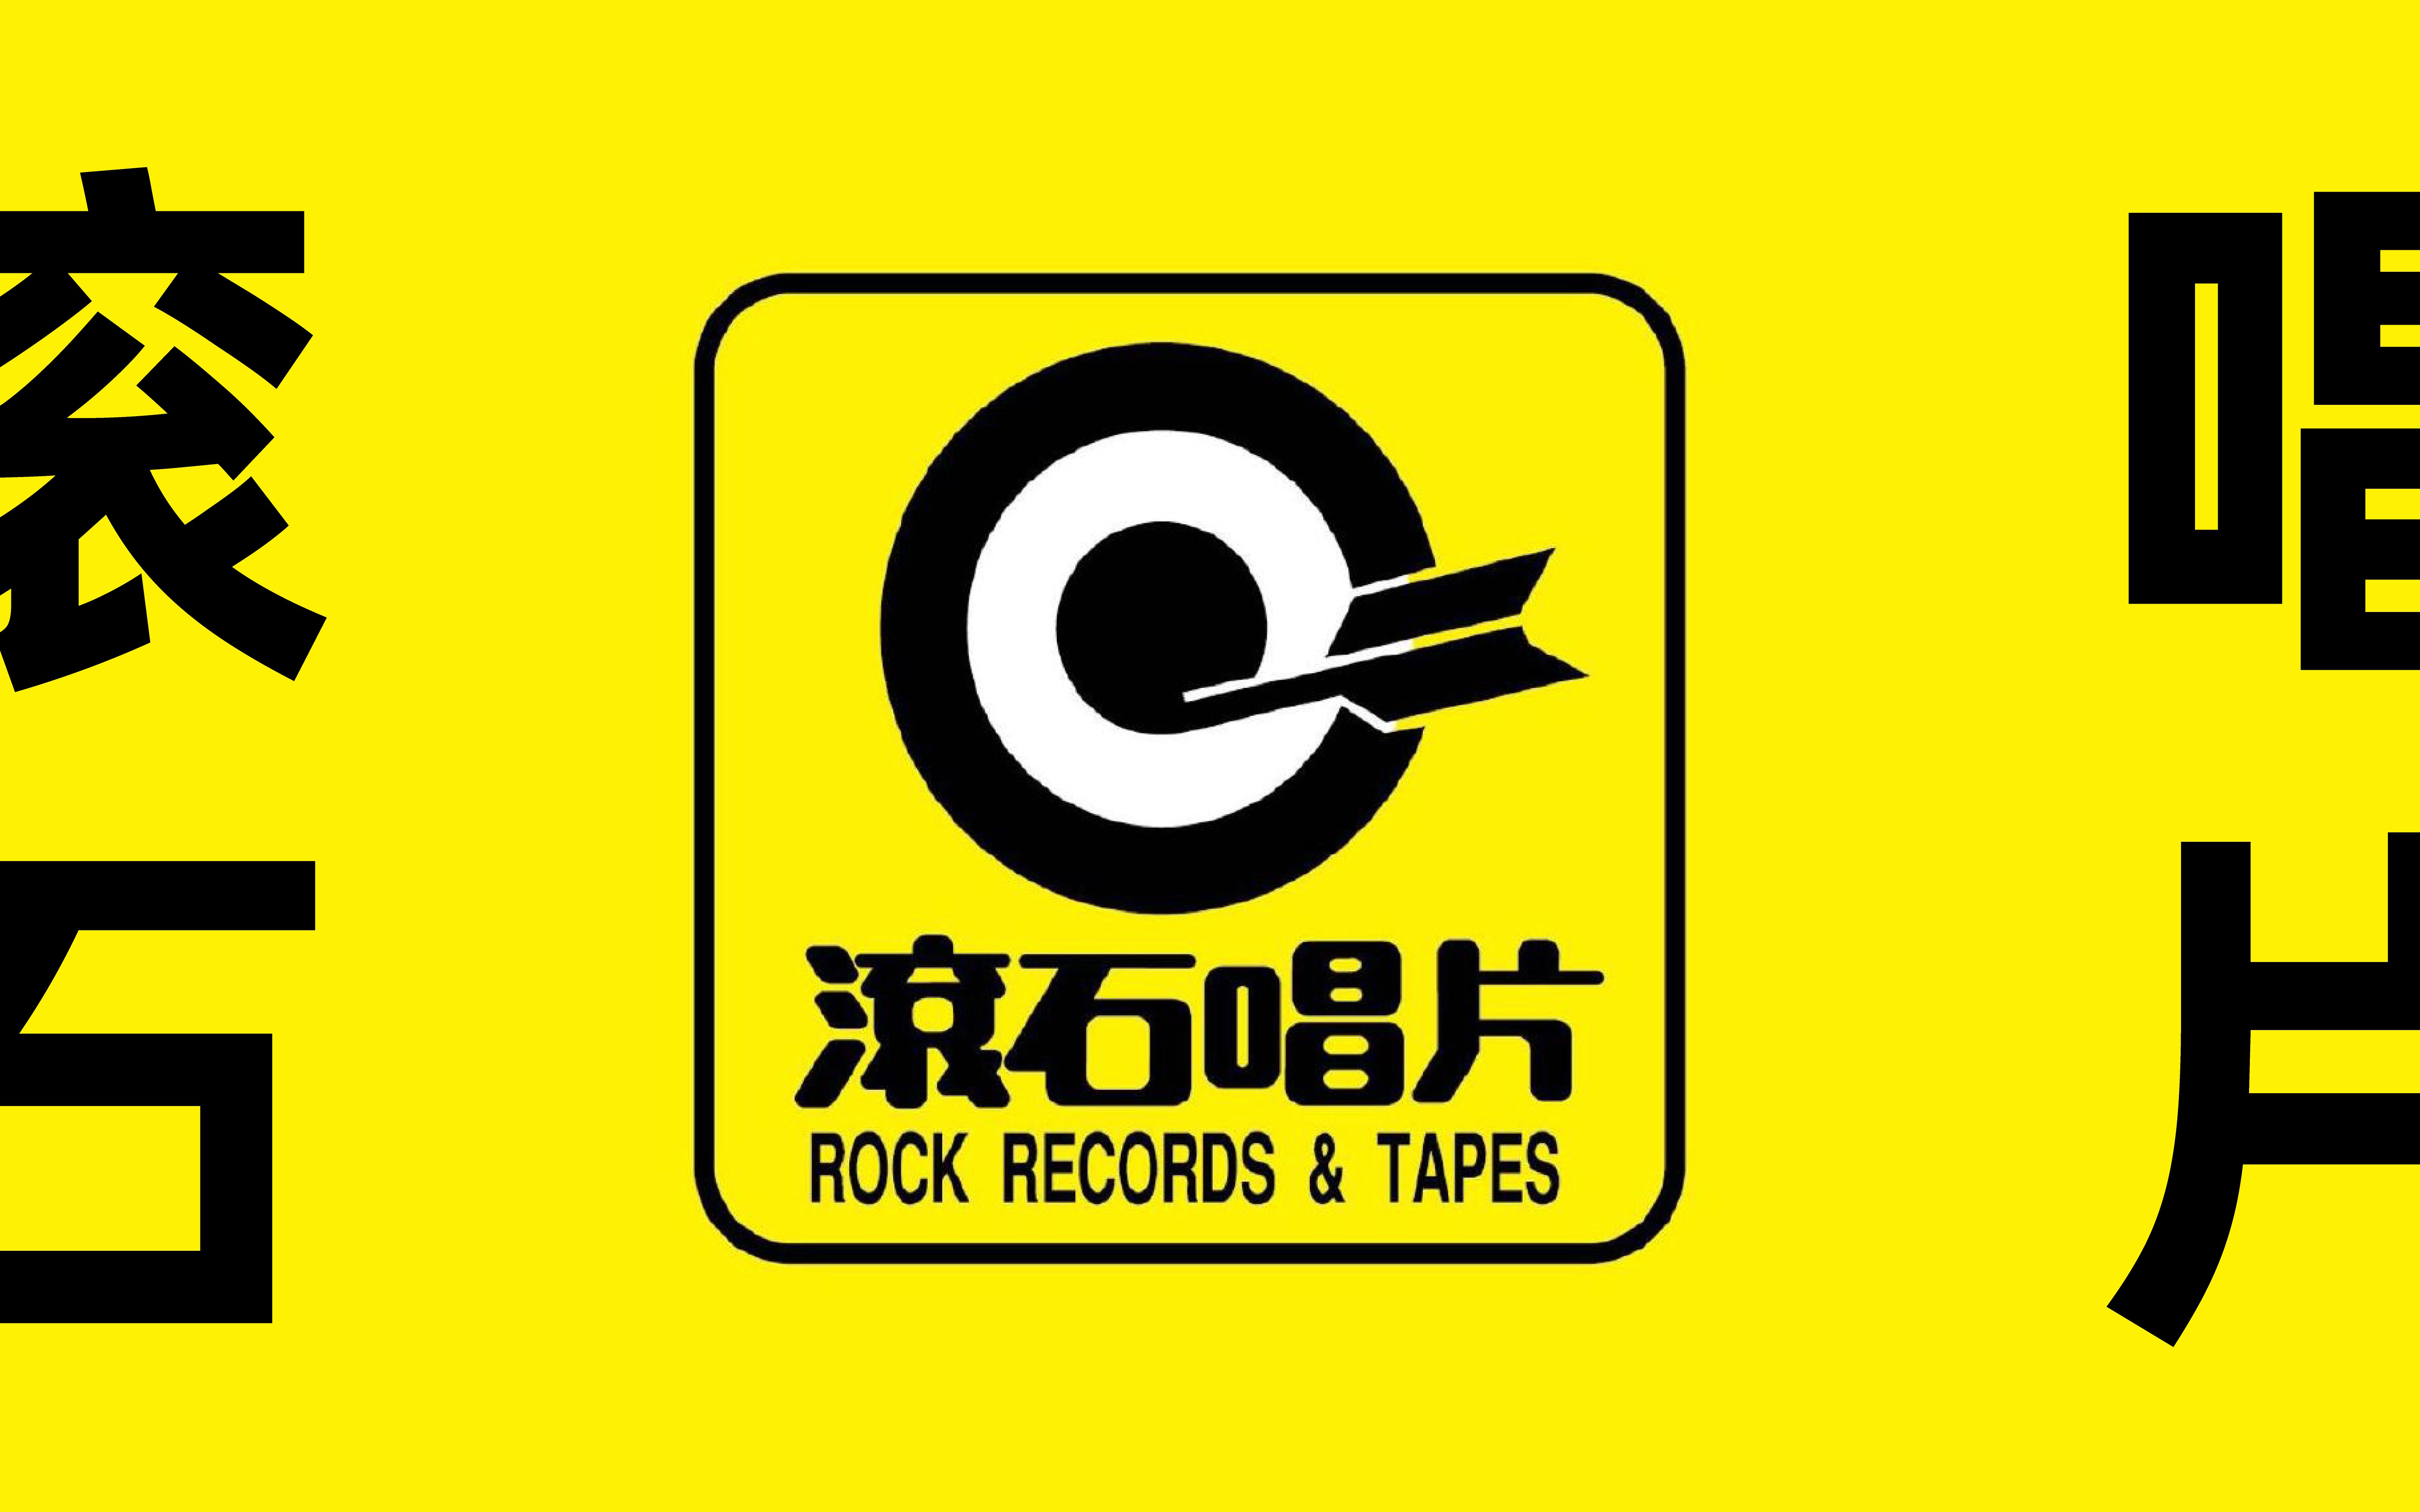 滚石唱片logo图片